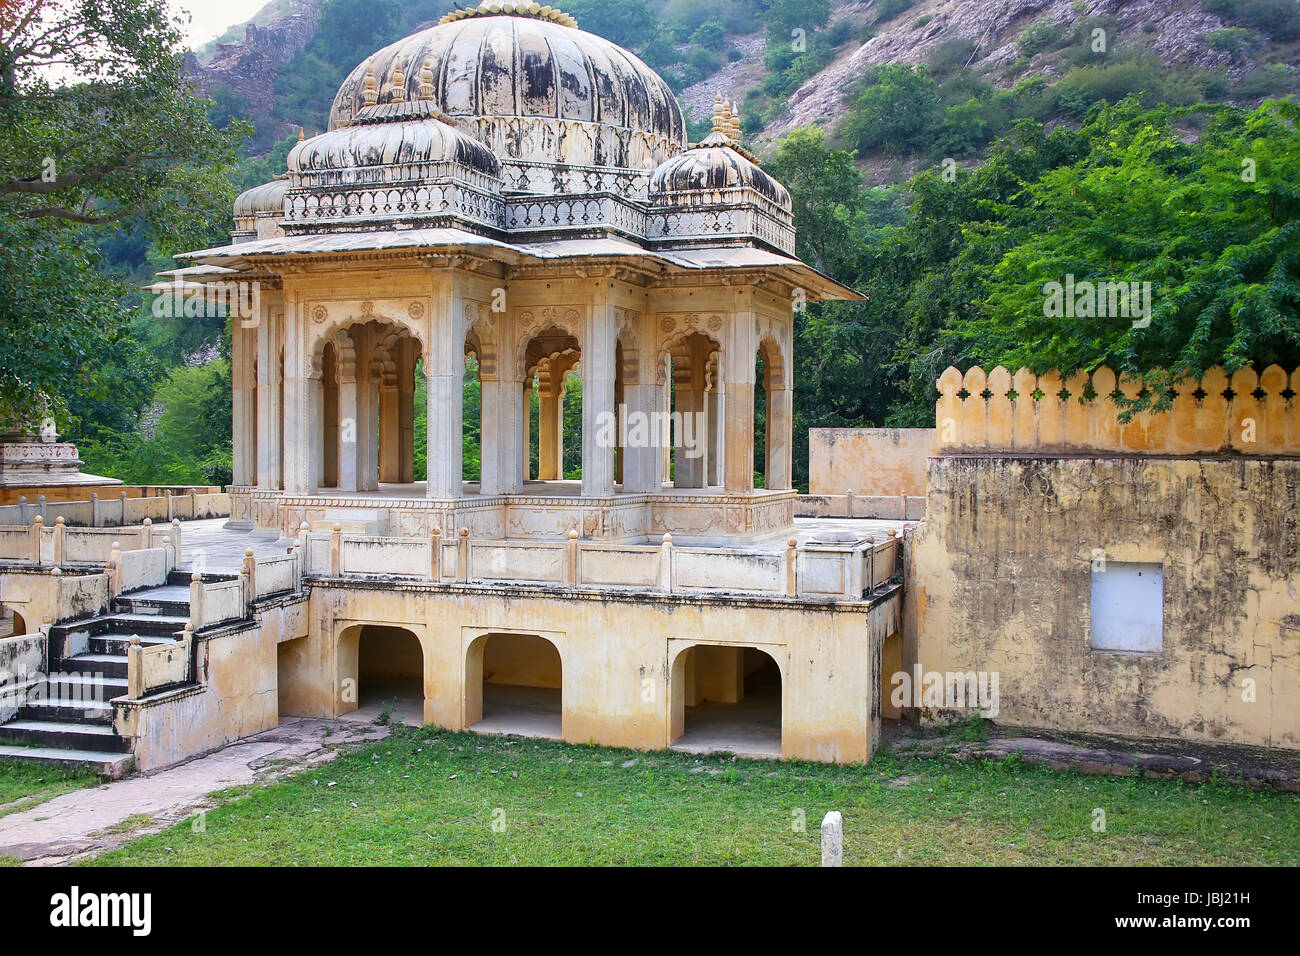 Königliche Kenotaphen in Jaipur, Rajasthan, Indien. Sie wurden als die königlichen Einäscherung Anlage der mächtigen Kachhawa-Dynastie bezeichnet. Stockfoto